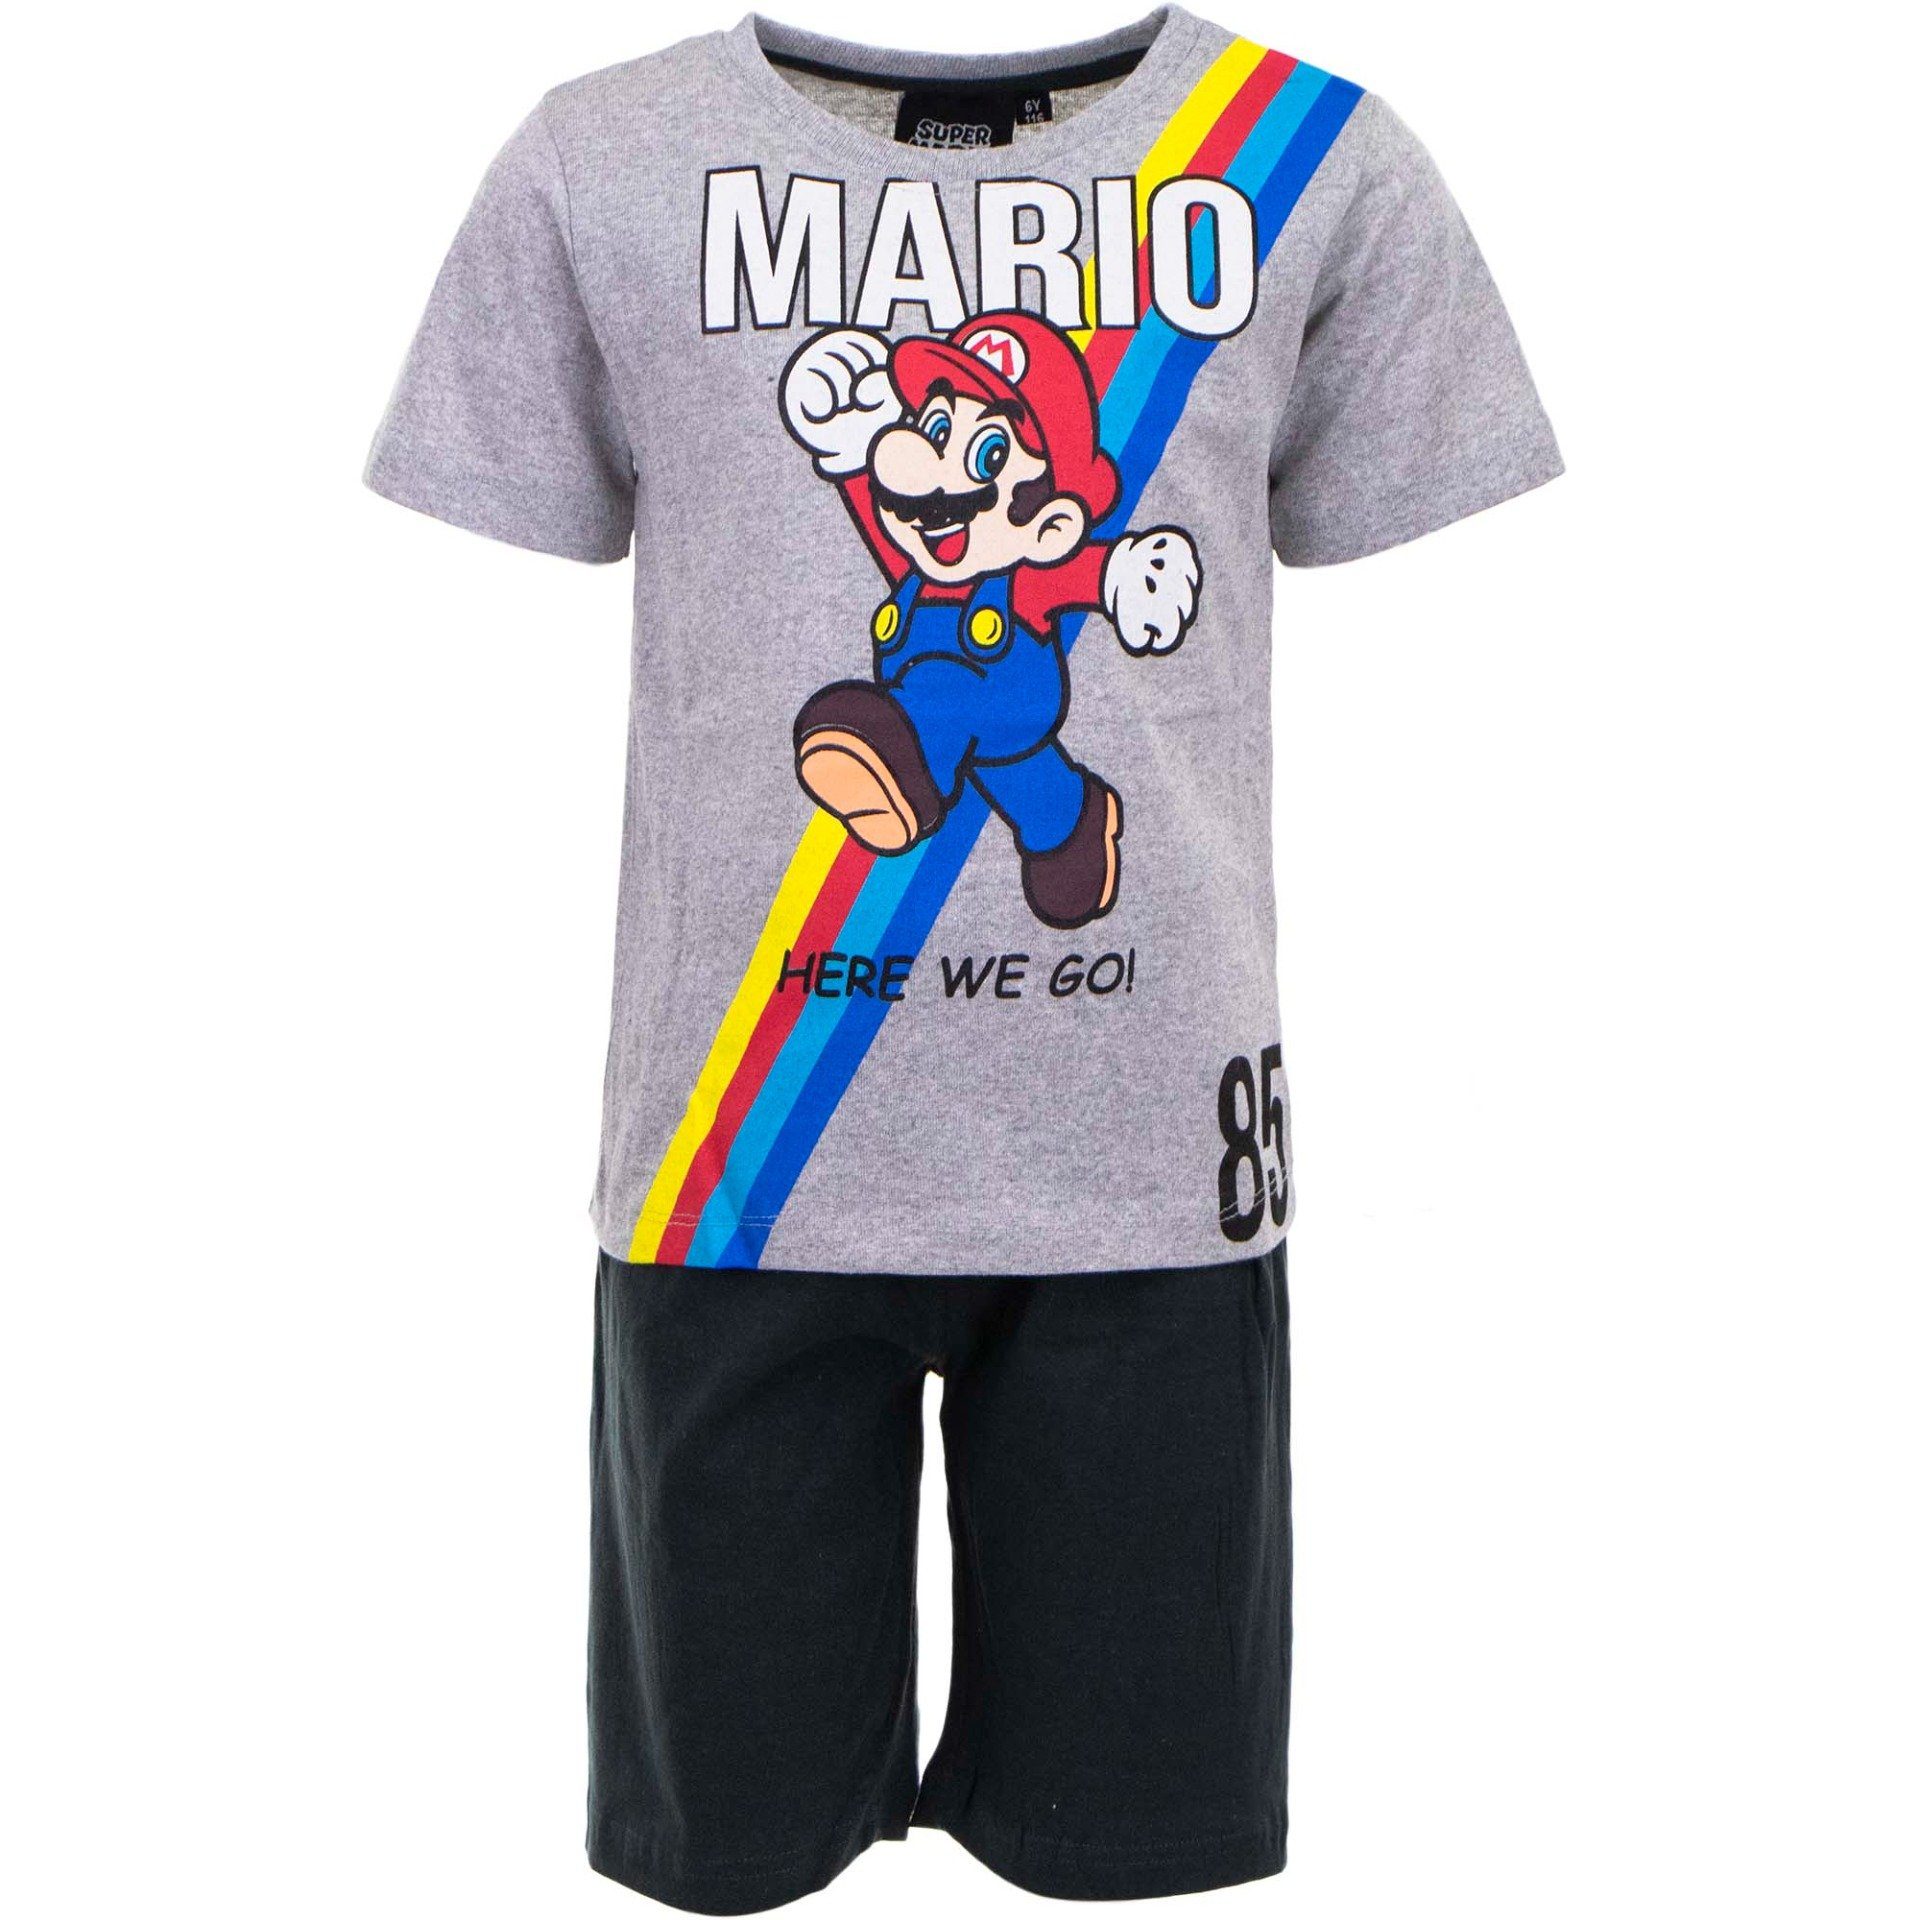 Super Mario Schlafanzug Here We Go Jungen Pyjama Gr. 98 bis 128, Baumwolle, Grau Schwarz